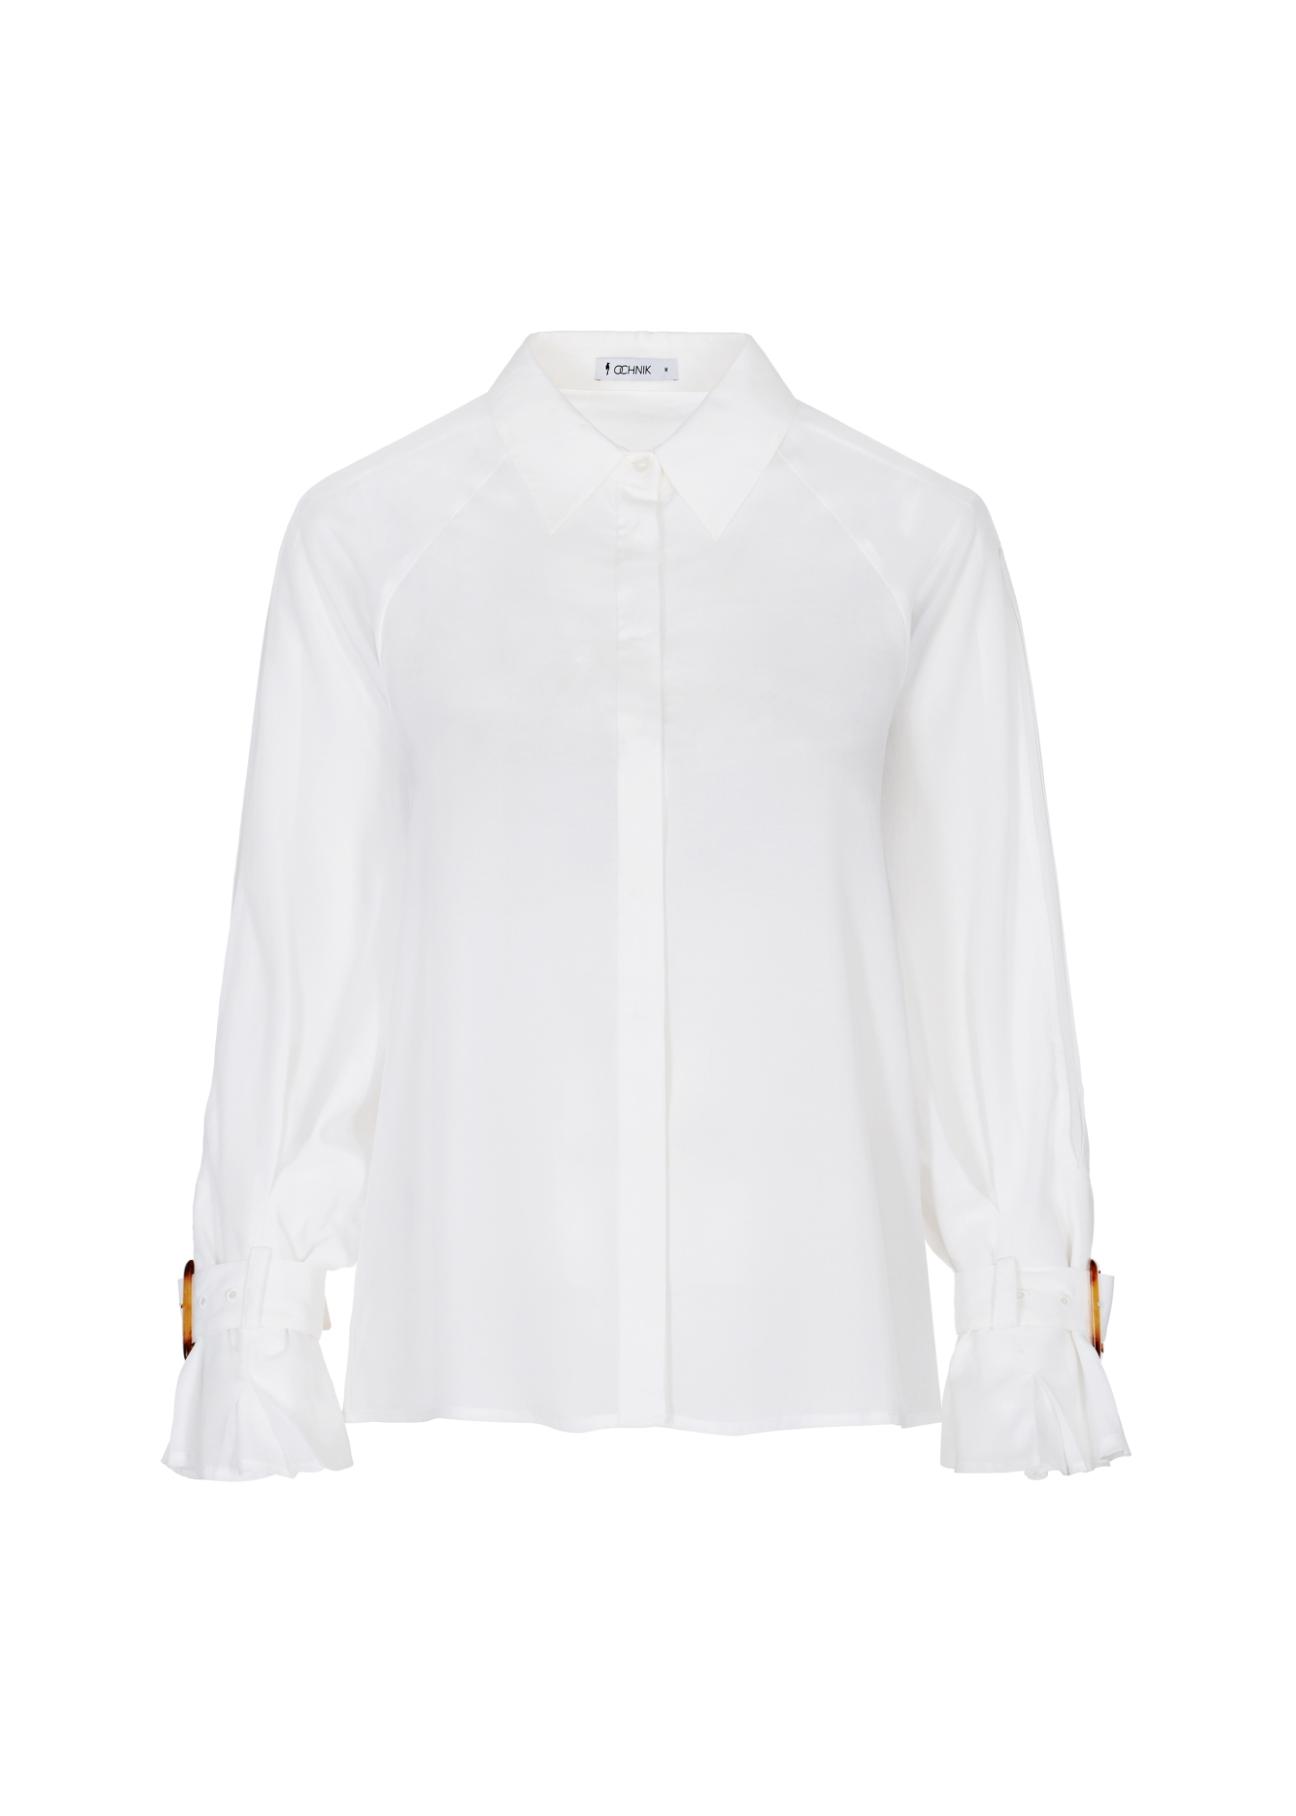 Biała koszula z szerokimi rękawami KOSDT-0087-11(W21)